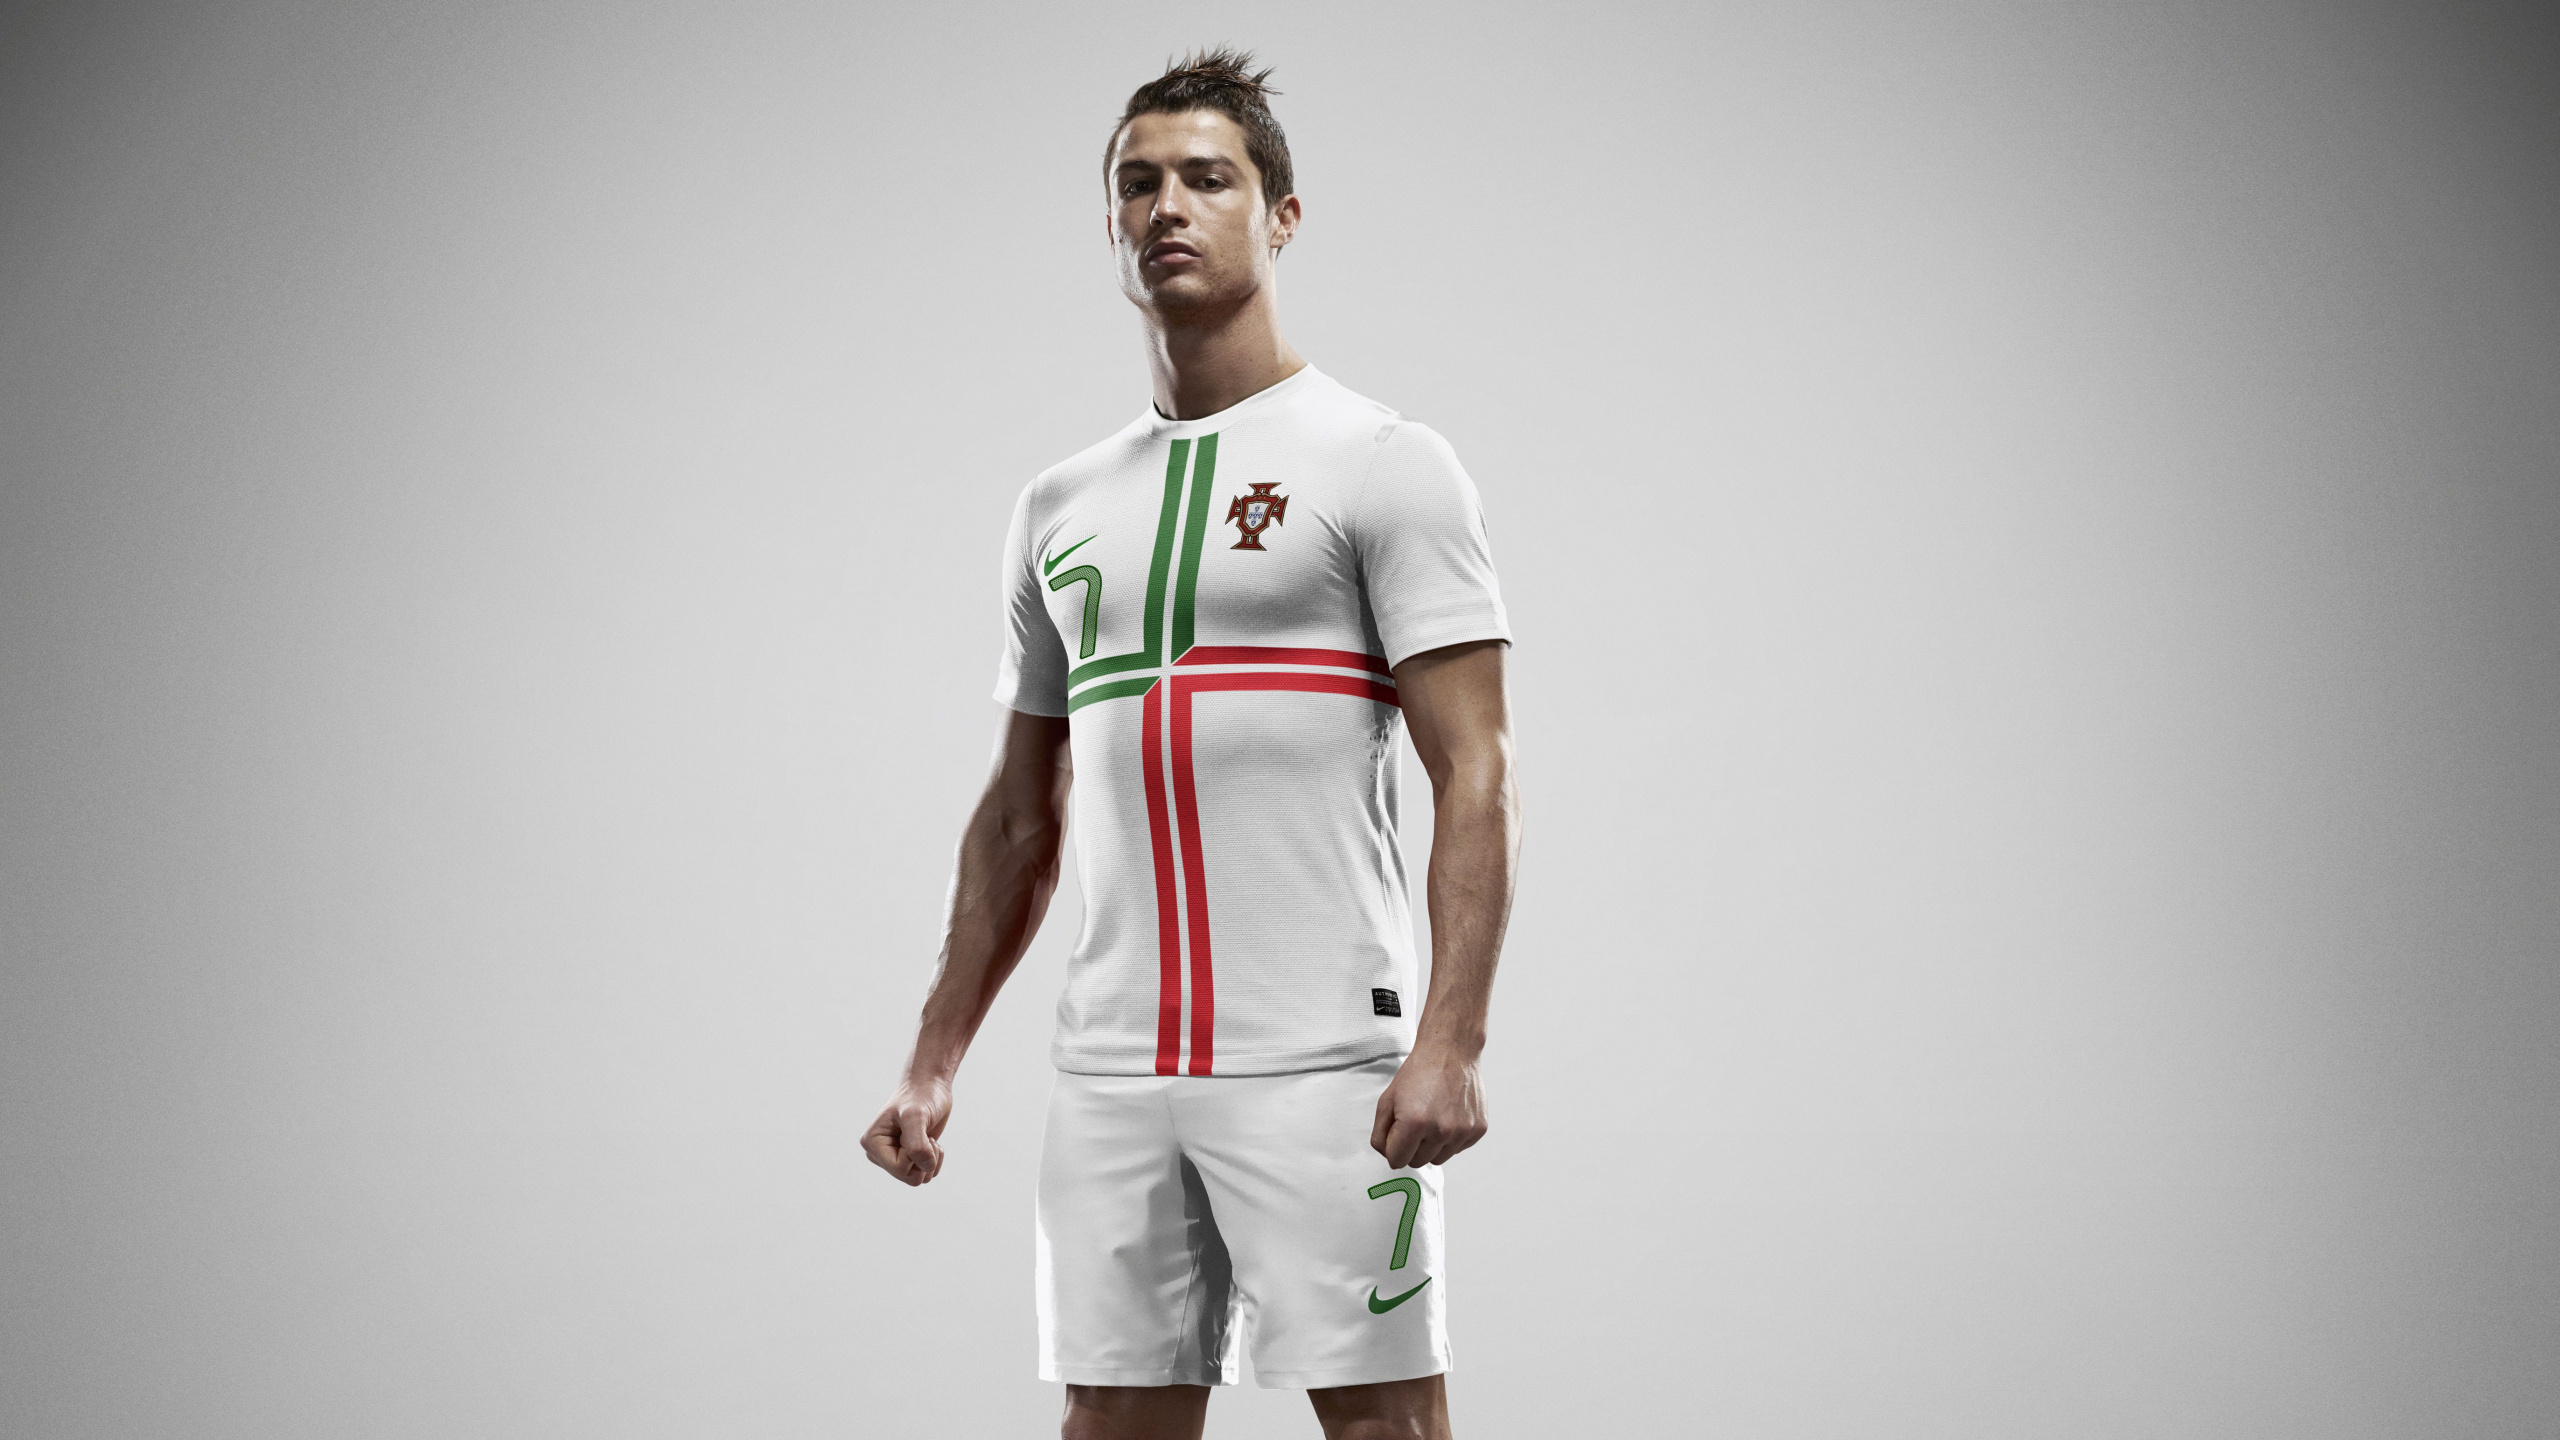 克里斯蒂亚诺*罗纳尔多, 足球运动员, 白色, 泽西, 运动服 壁纸 2560x1440 允许